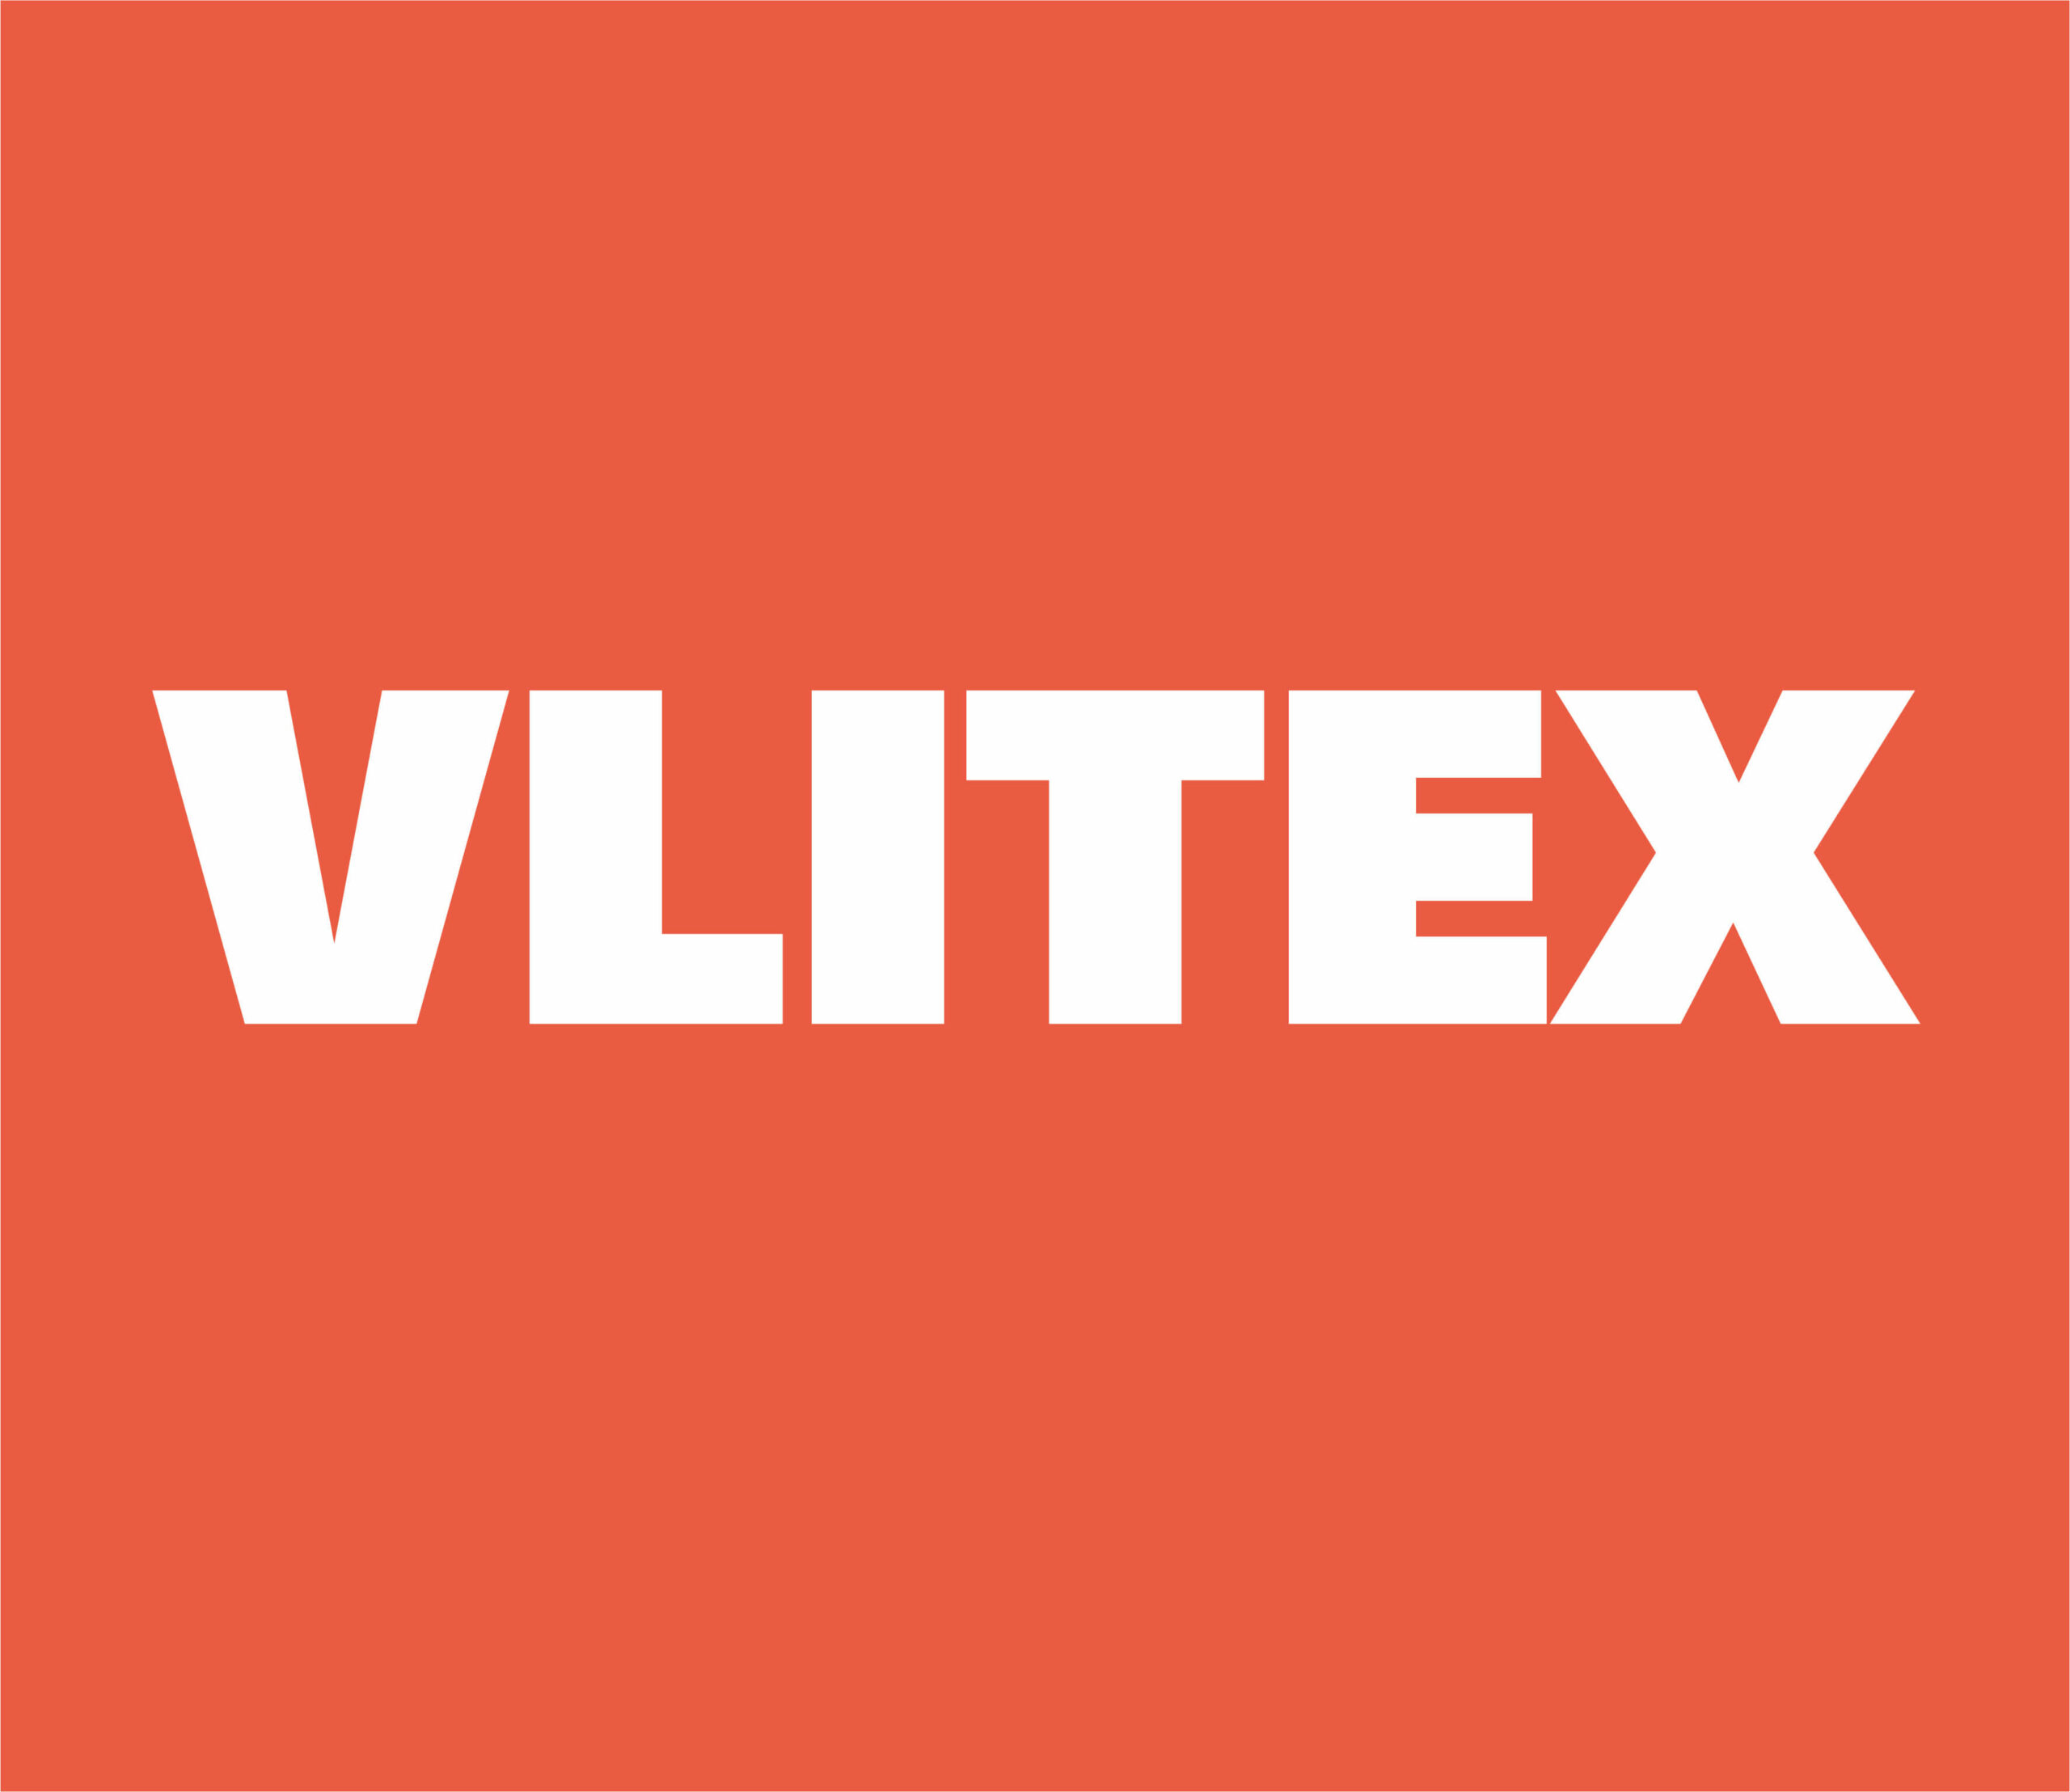 vlitex logo